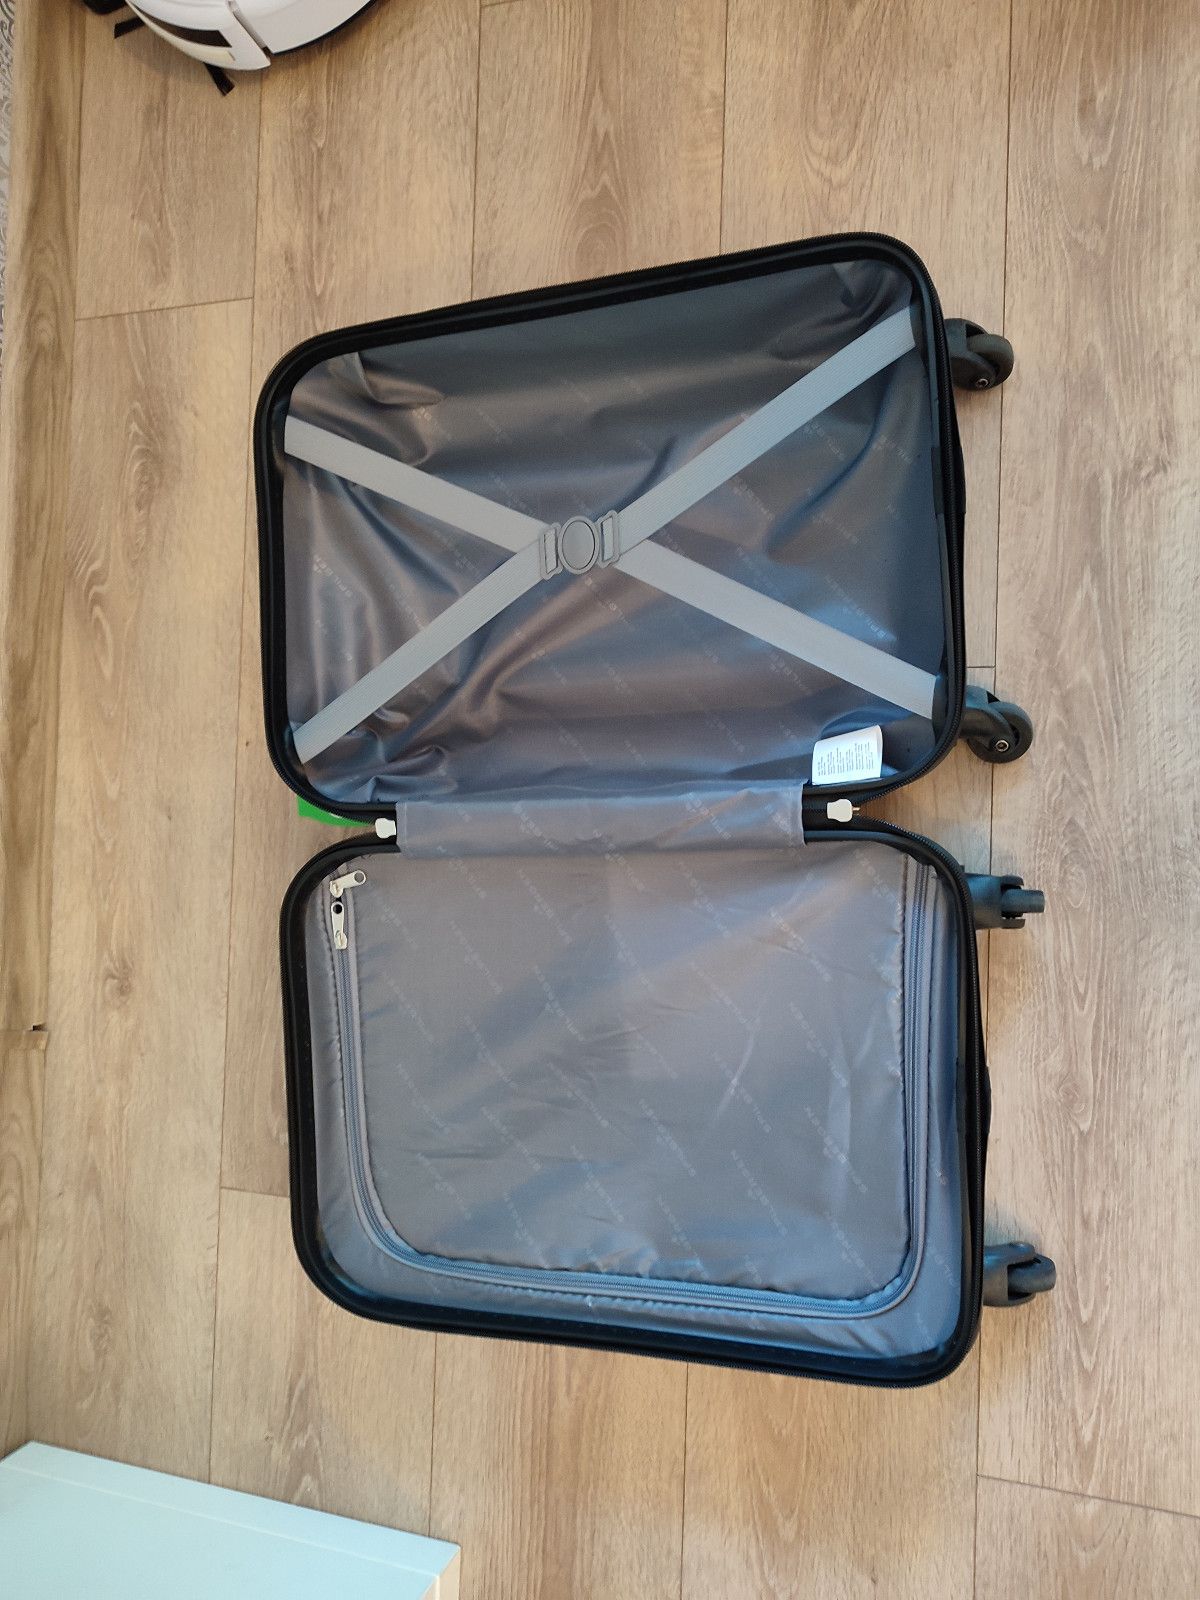 Nowa bordowa walizka podróżna